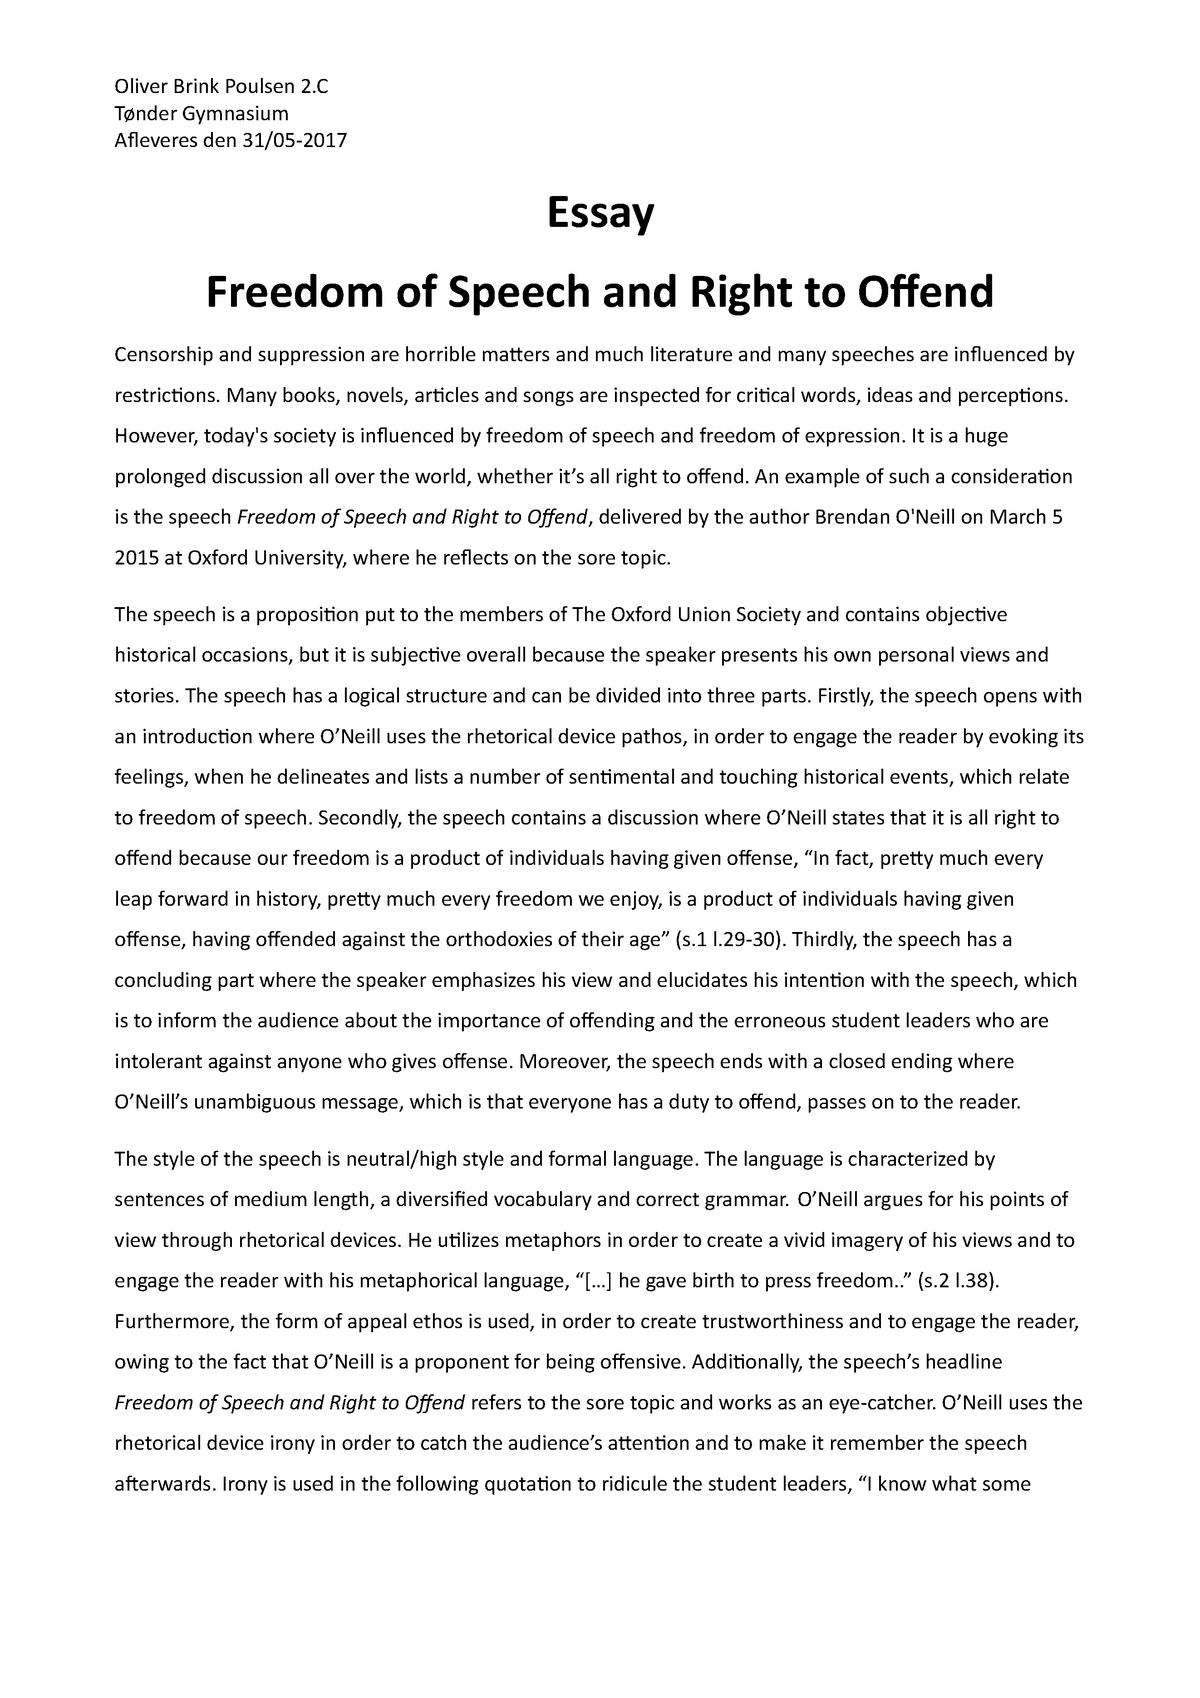 freedom of speech essay